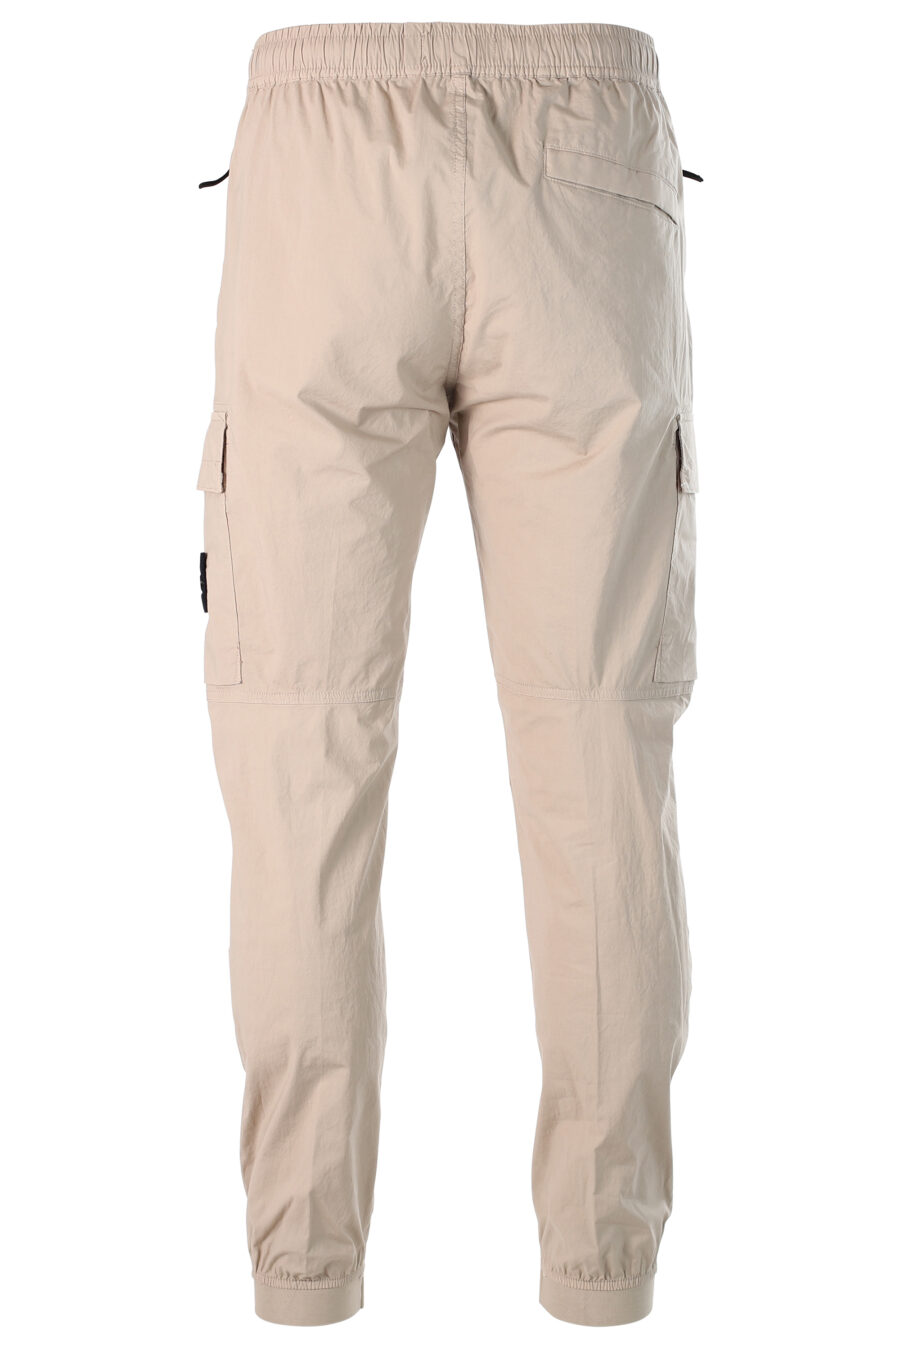 Pantalon cargo beige avec patch - 8052572528552 3